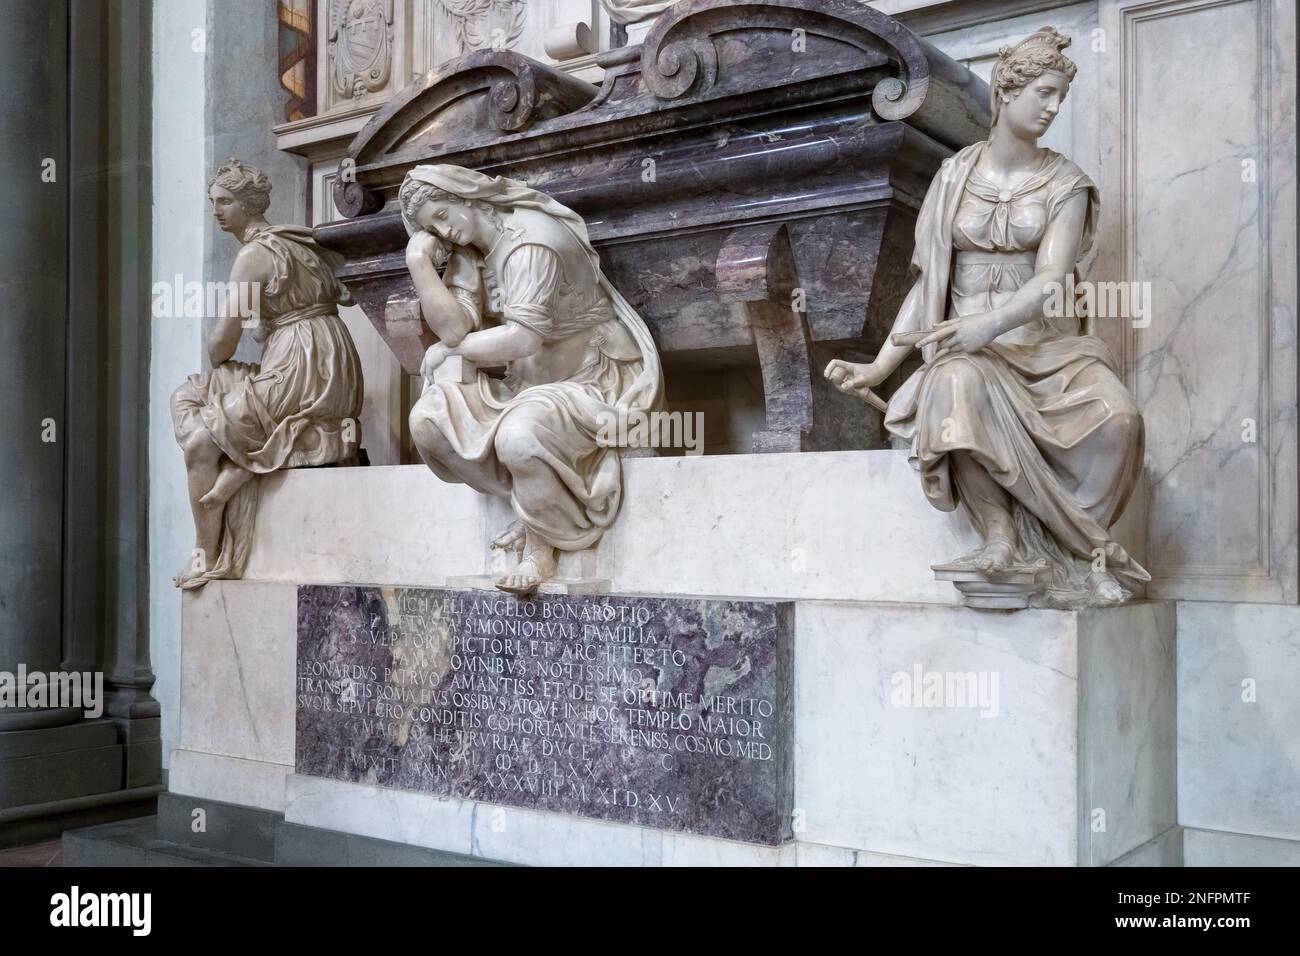 Florenz, Toskana/Italien - Oktober 19: Denkmal für Michelangelo di Lodovico Buonarroti Simoni in der Kirche Santa Croce in Florenz am 19. Oktober 2019 Stockfoto